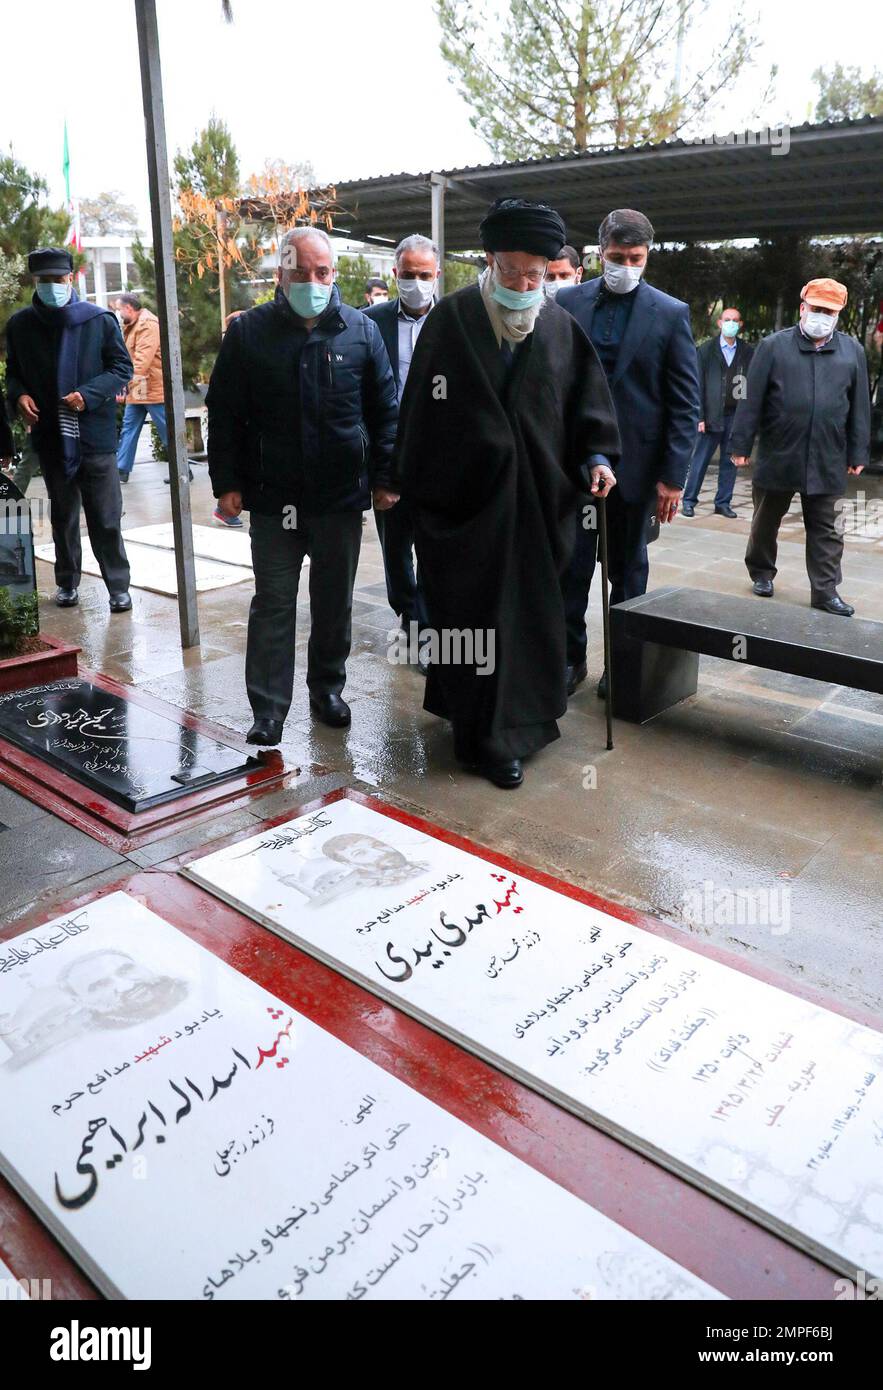 El líder supremo de Irán, el ayatolá Ali Khmenei, visita las tumbas de los iraníes que murieron durante la guerra en siria, en el cementerio Behesh Zahra en Teherán el 31 de enero de 2023. Foto de Parspix/ABACAPRESS.COM Foto de stock